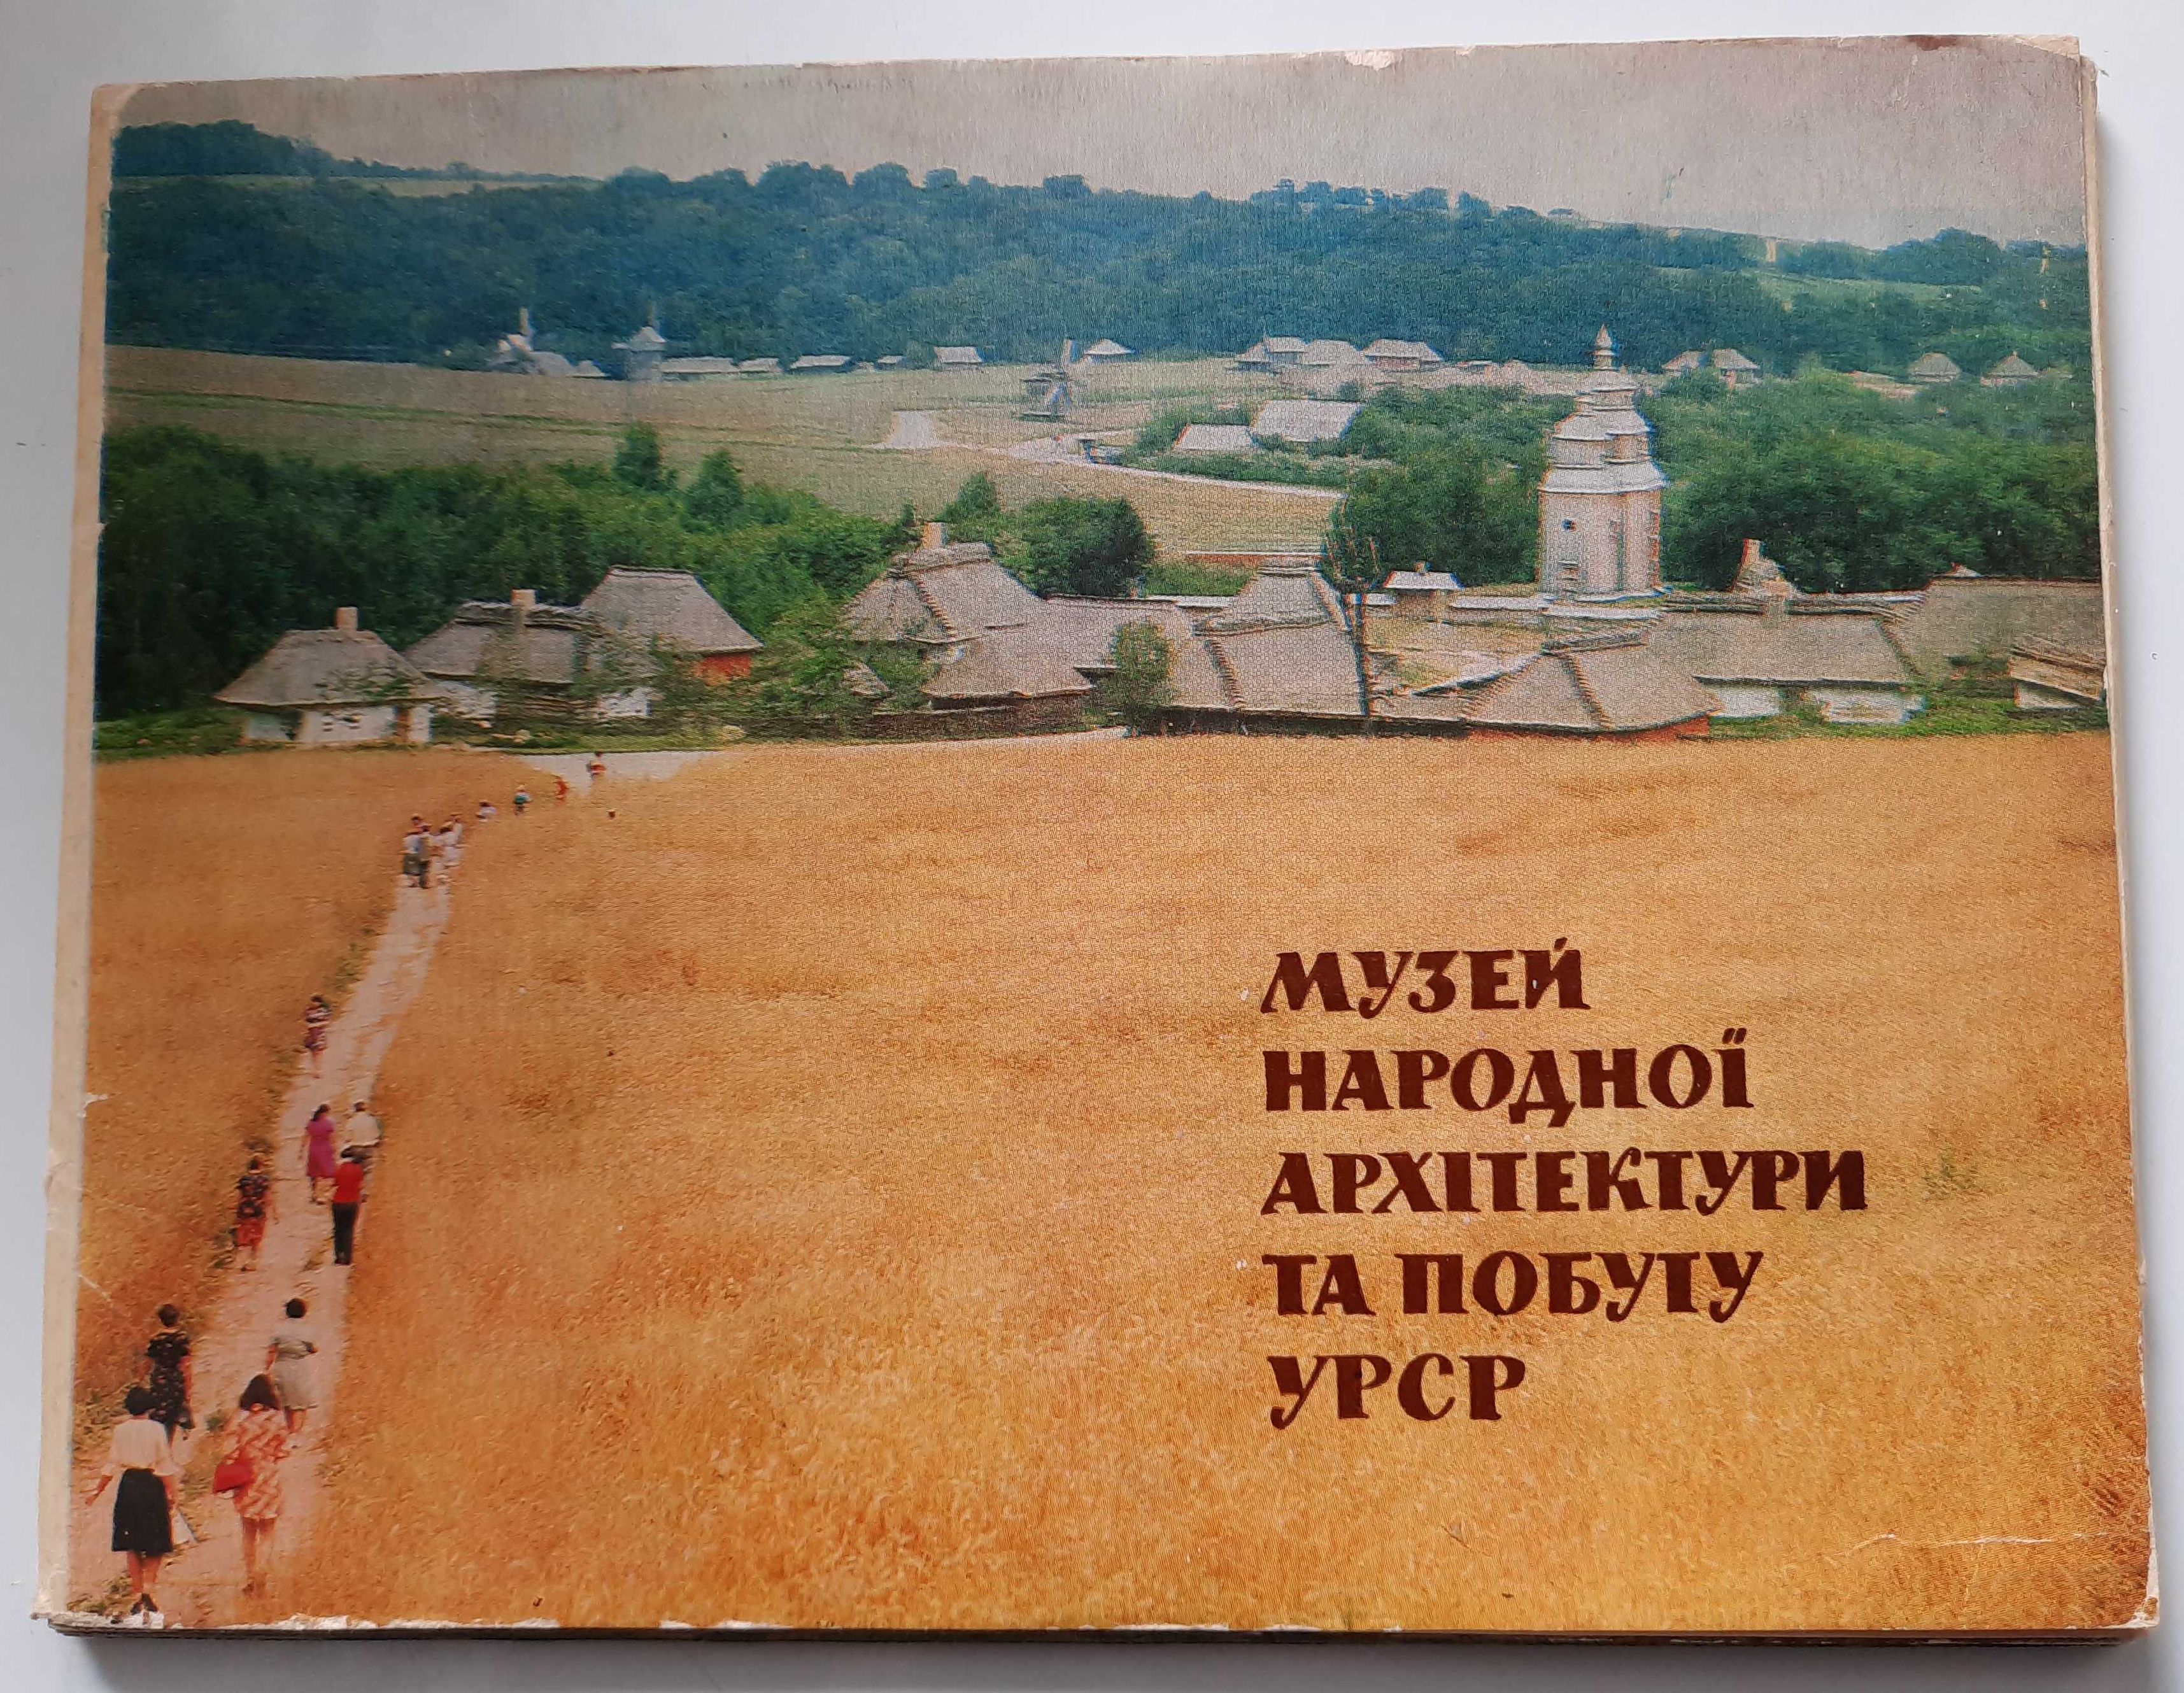 Музей Народної архітектури та побуту УРСР 1978 г.